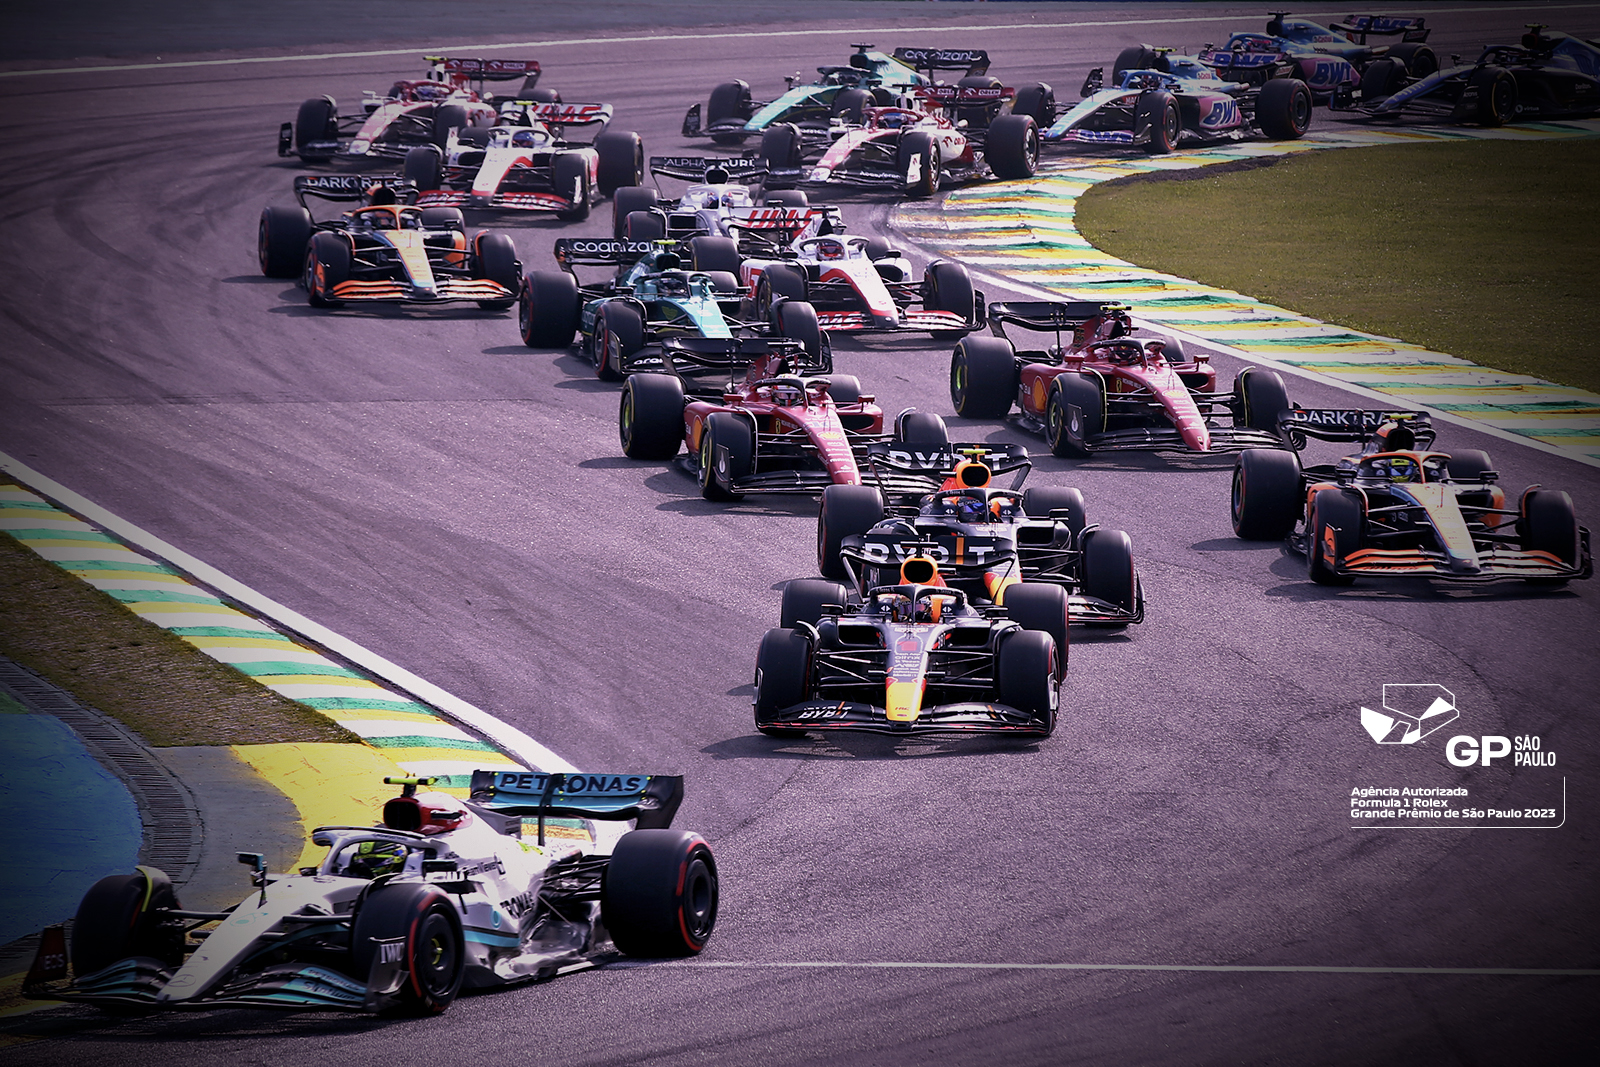 BeFly é a agência oficial da Fórmula 1 Rolex Grande Prêmio de São Paulo e  abre vendas de pacotes - VoeNews - Notícias do Turismo